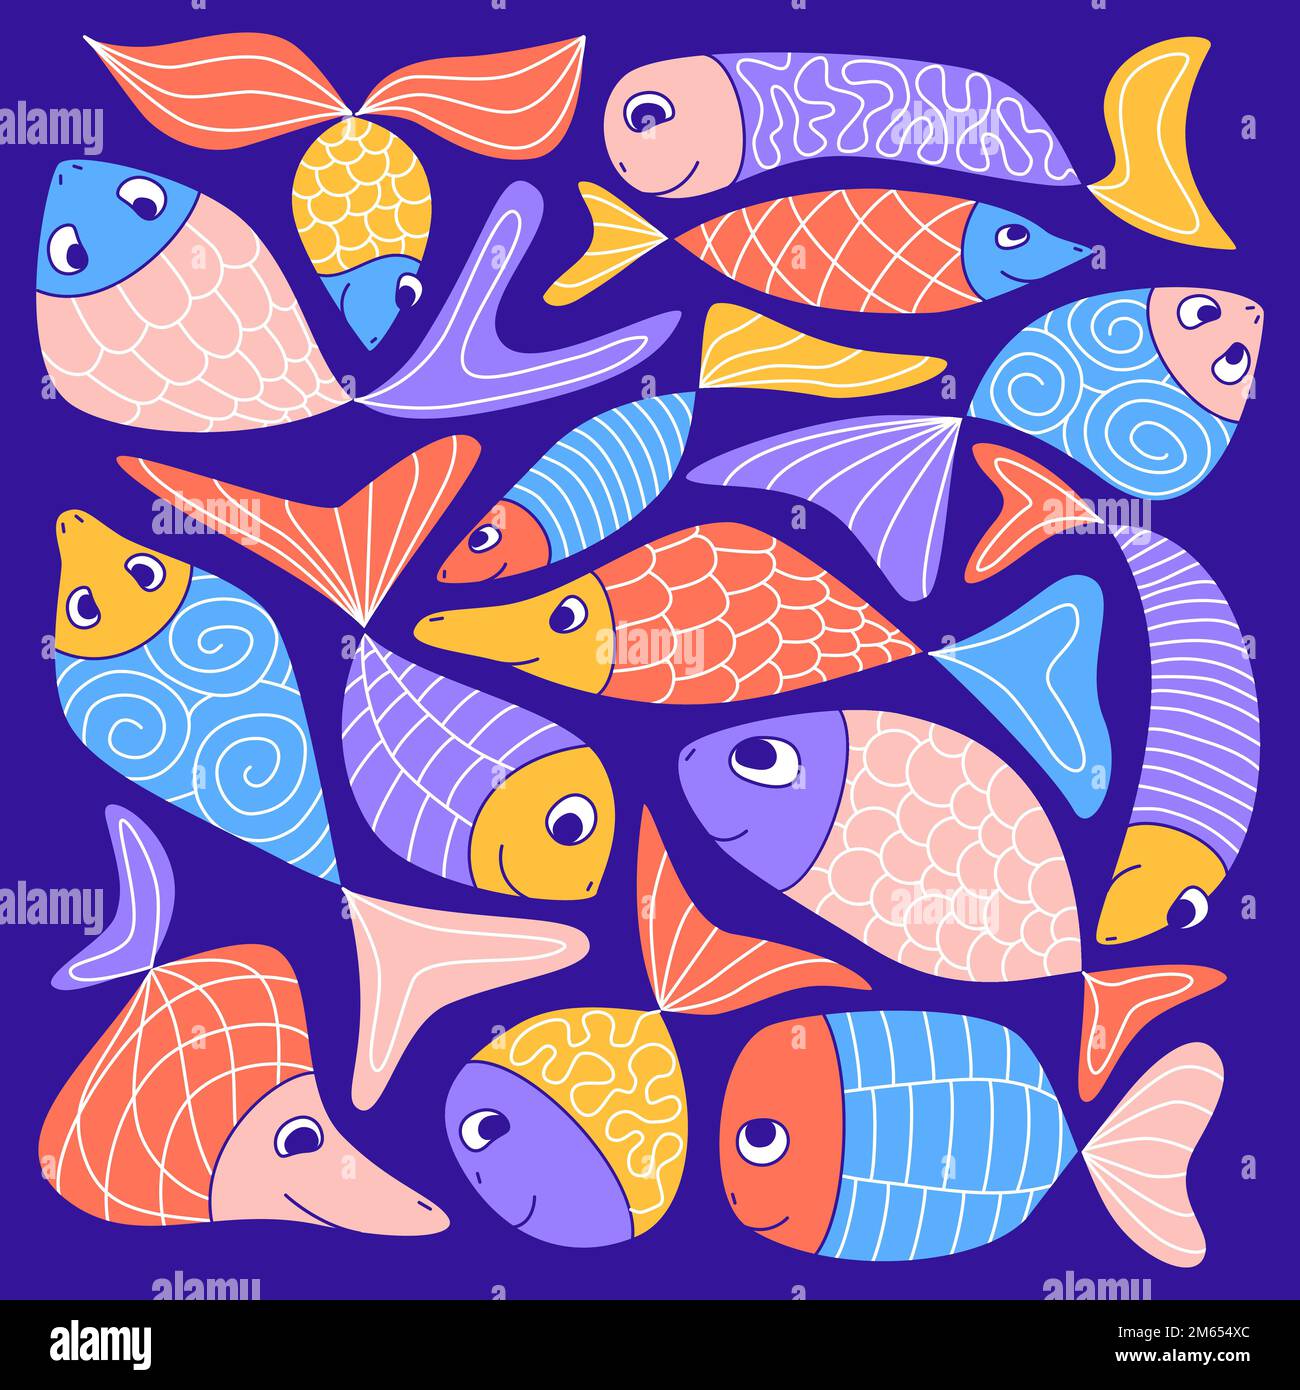 Adorable poisson d'aquarium coloré. Amusant enfant naïf style abstrait. Sardines à motifs, hareng, guppies, poissons rouges. Composition carrée. Vie marine s Illustration de Vecteur